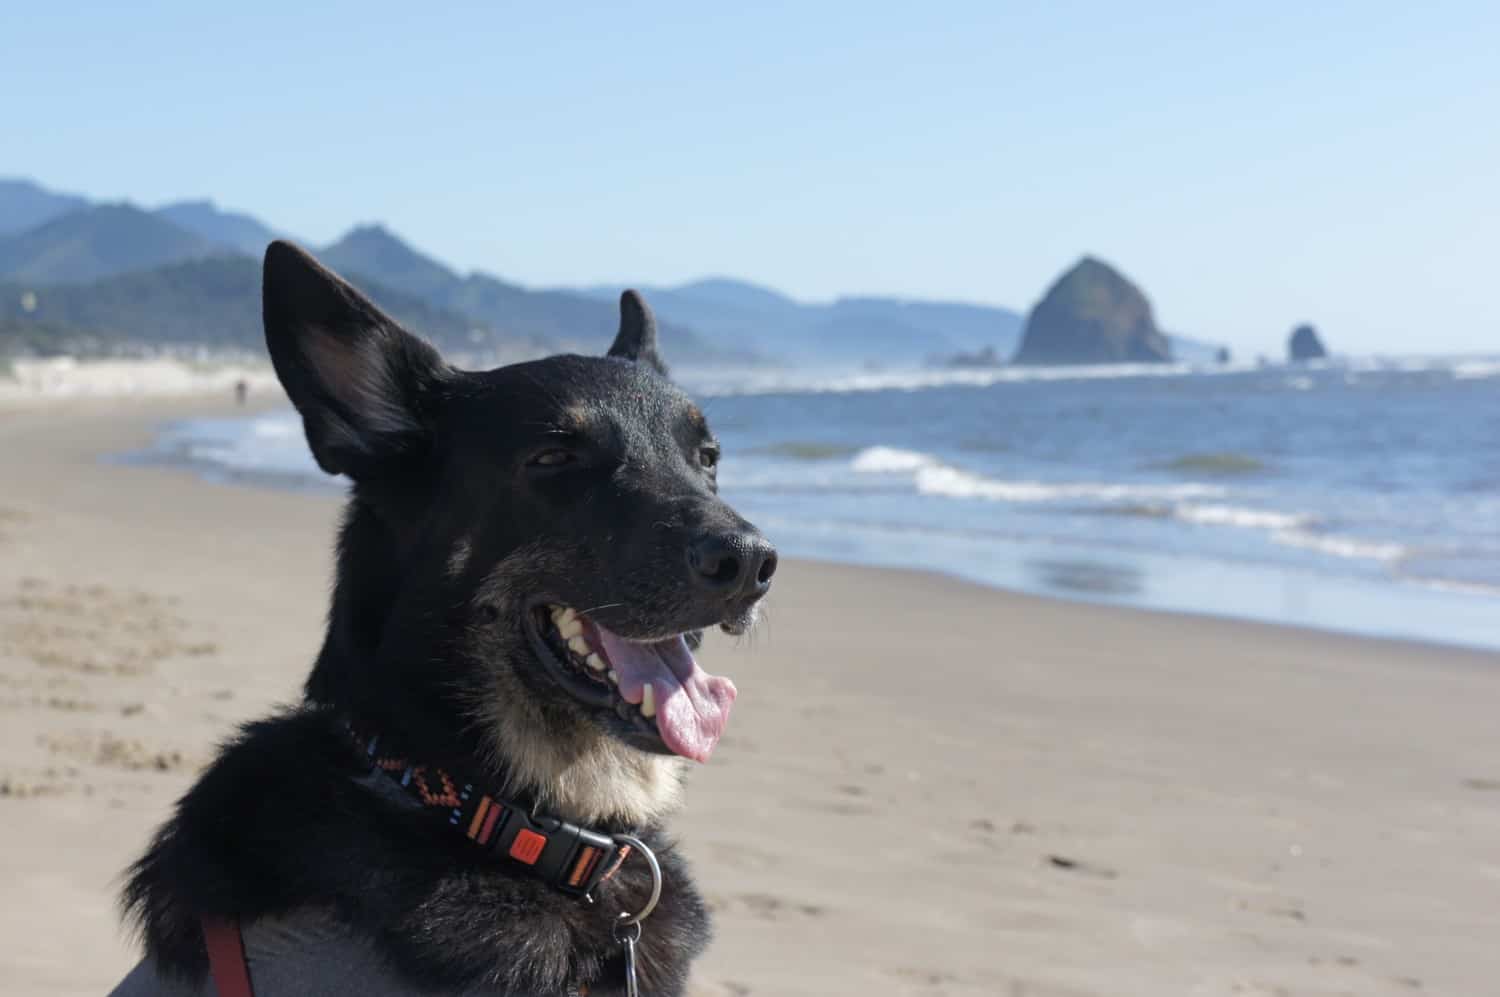 Buster on the Beach - Cannon Beach, Oregon